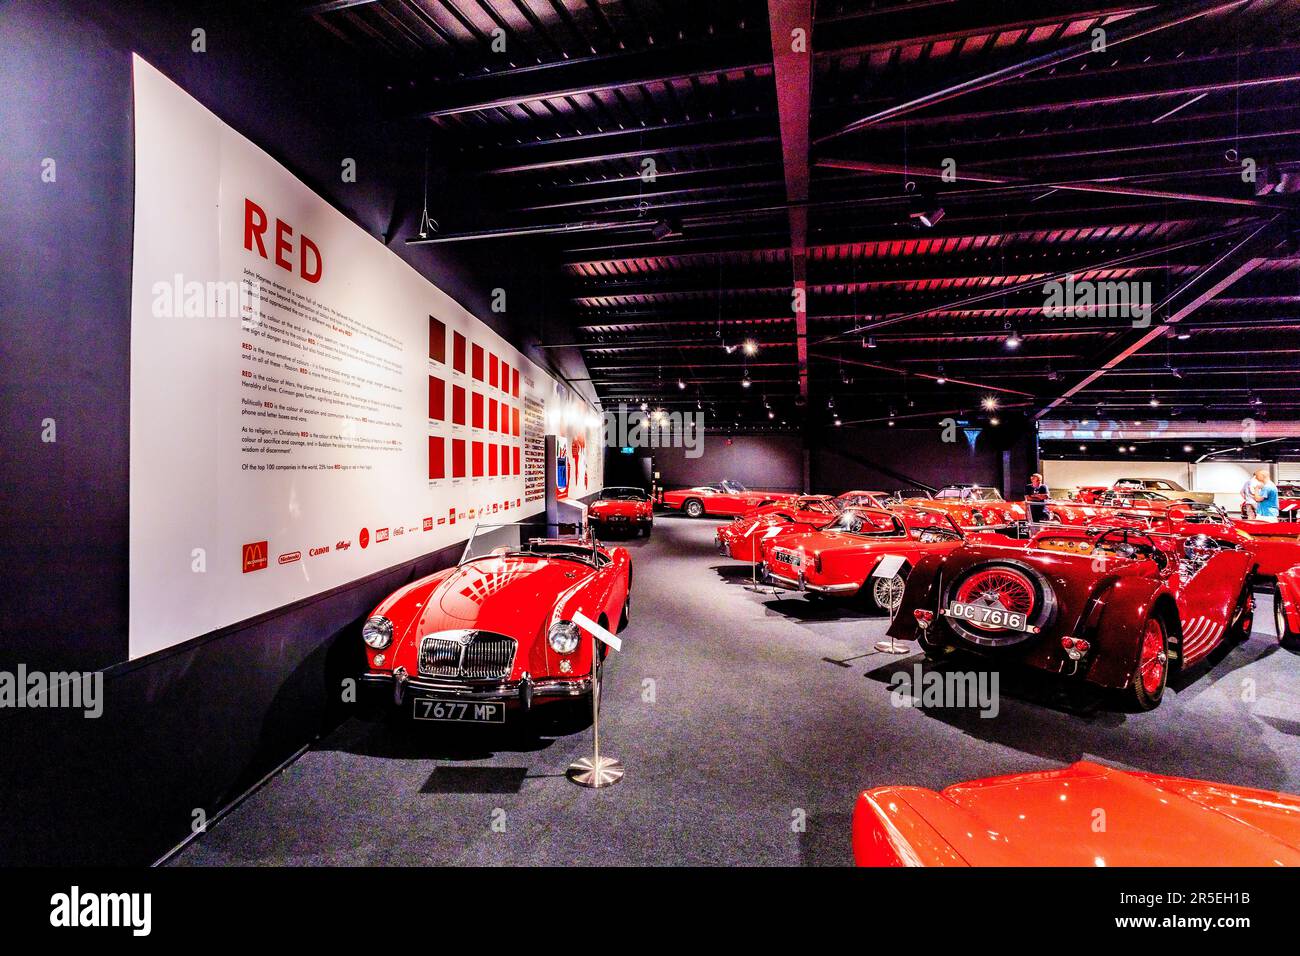 De nombreuses nuances de rouge dans la salle rouge du Haynes International Motor Museum, Sparkford, Somerset, Royaume-Uni Banque D'Images